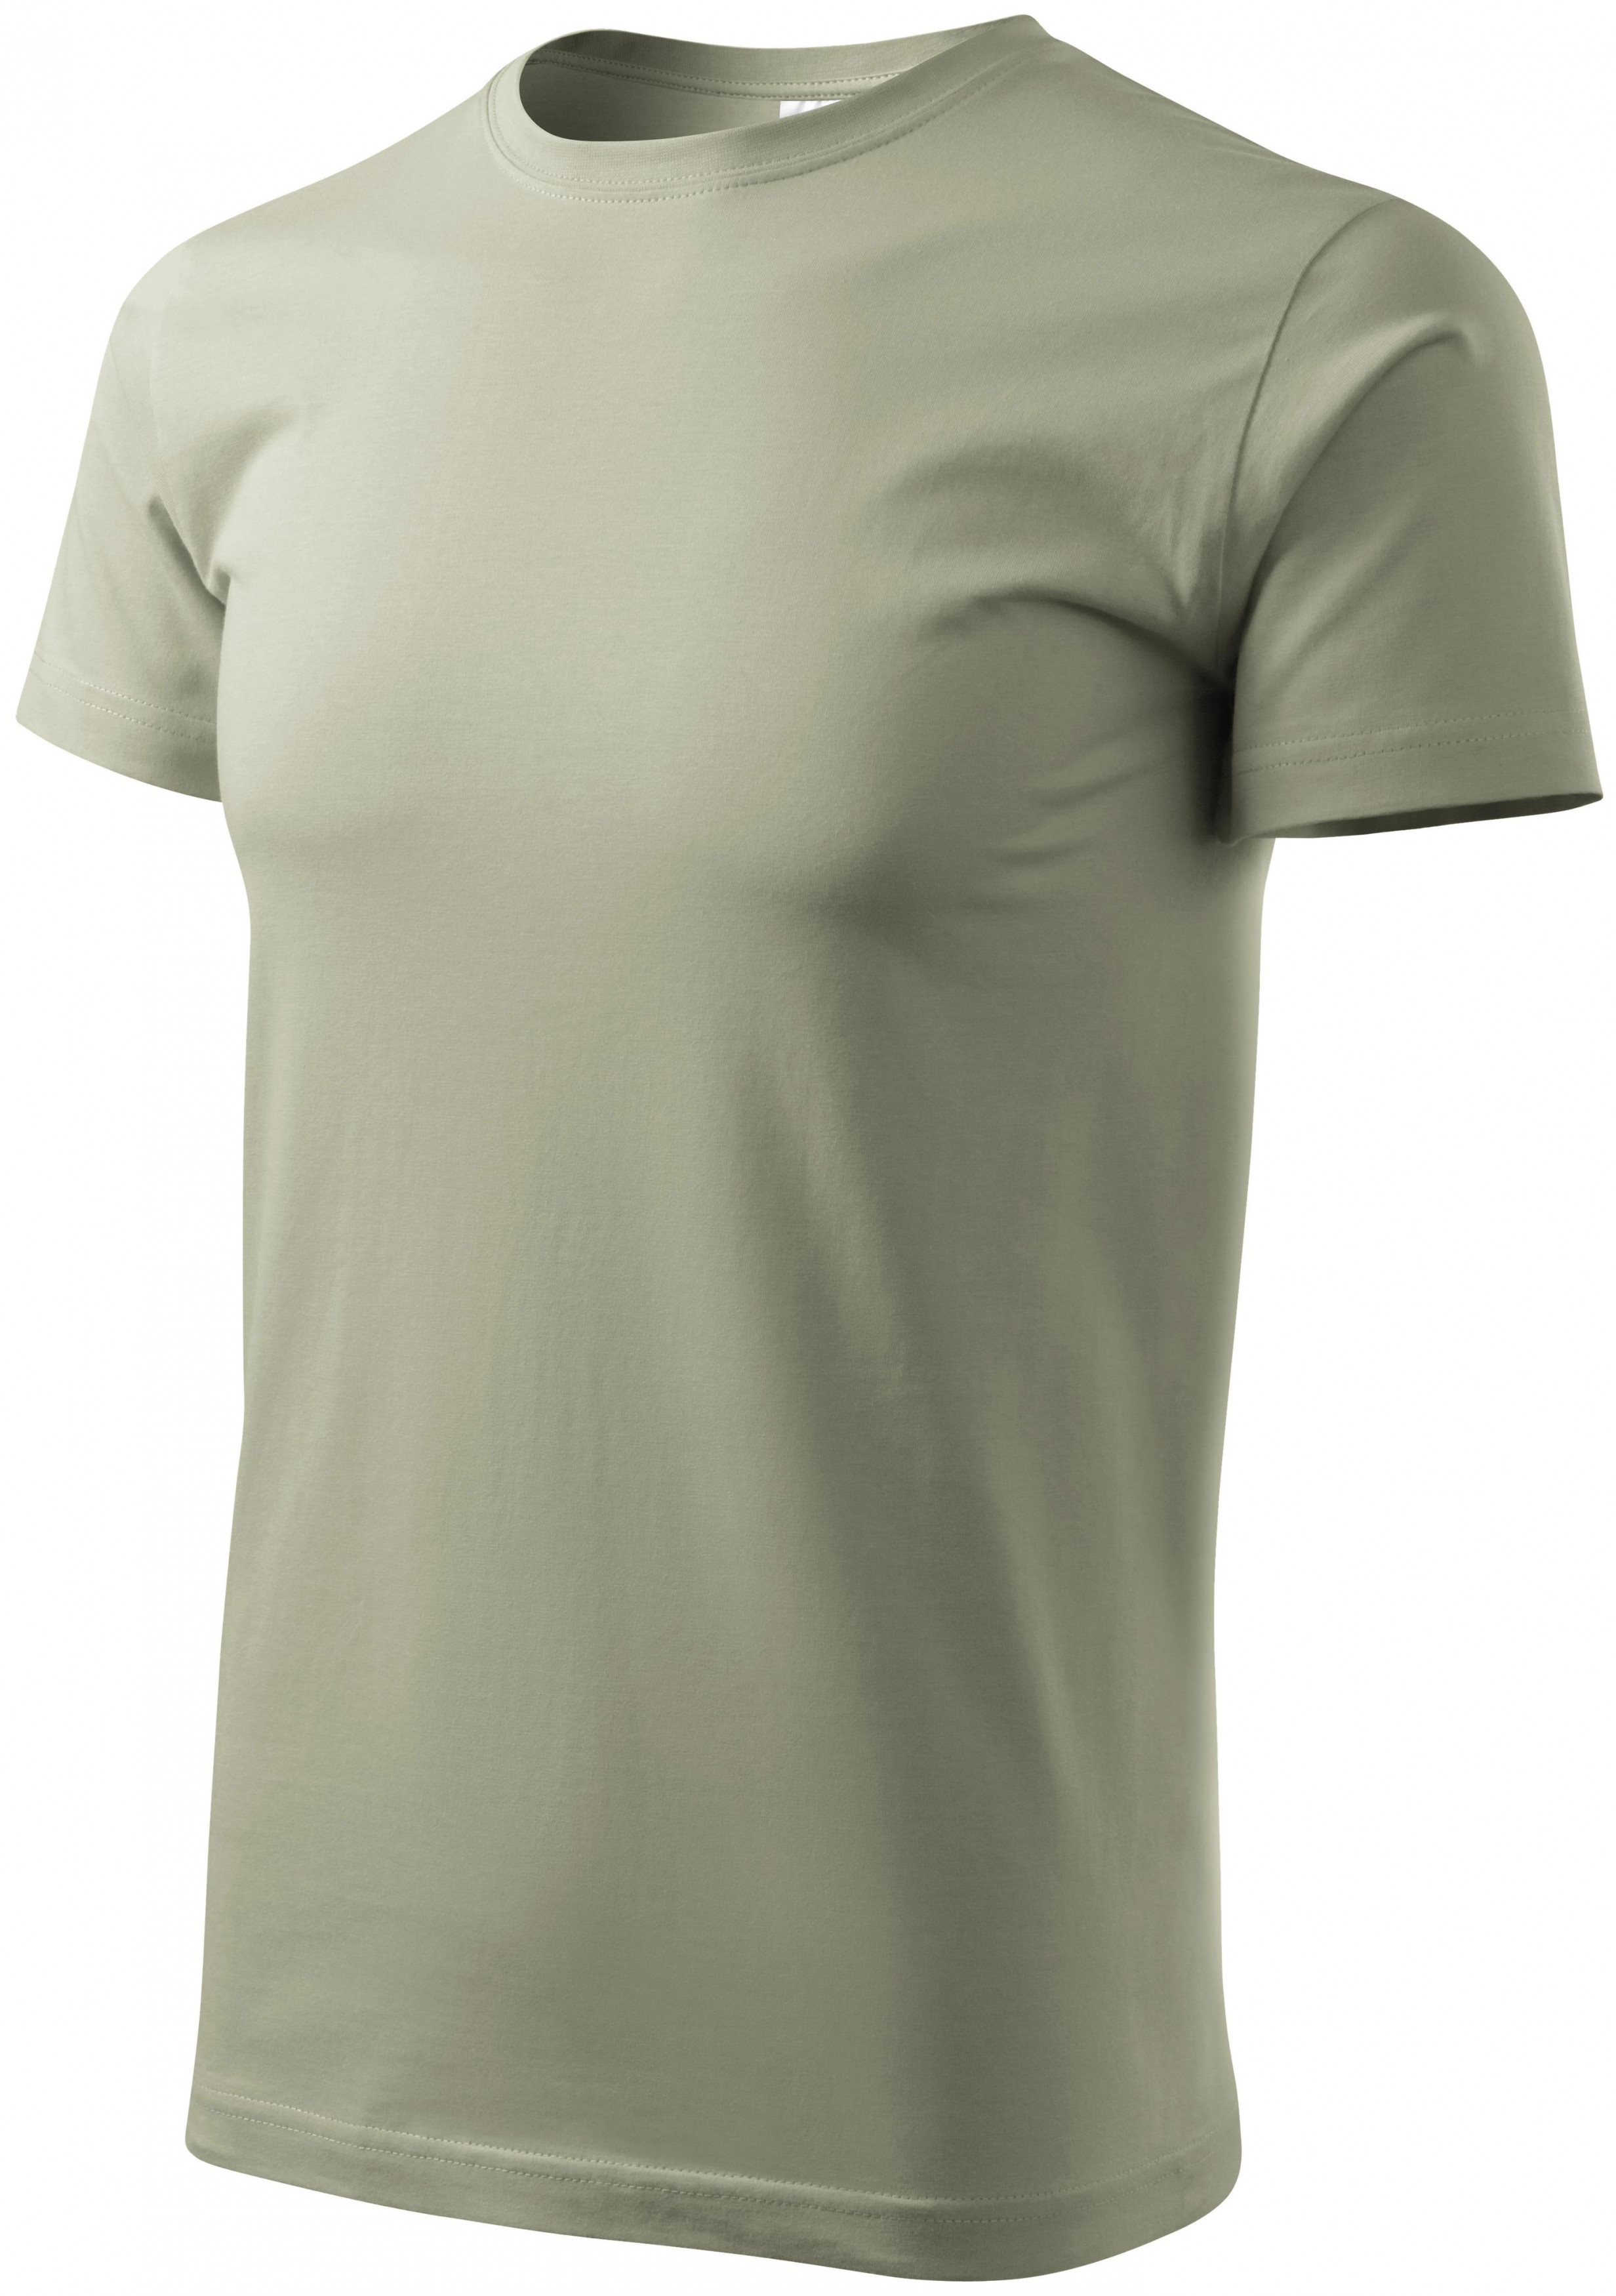 Pánske tričko jednoduché, svetlá khaki, S